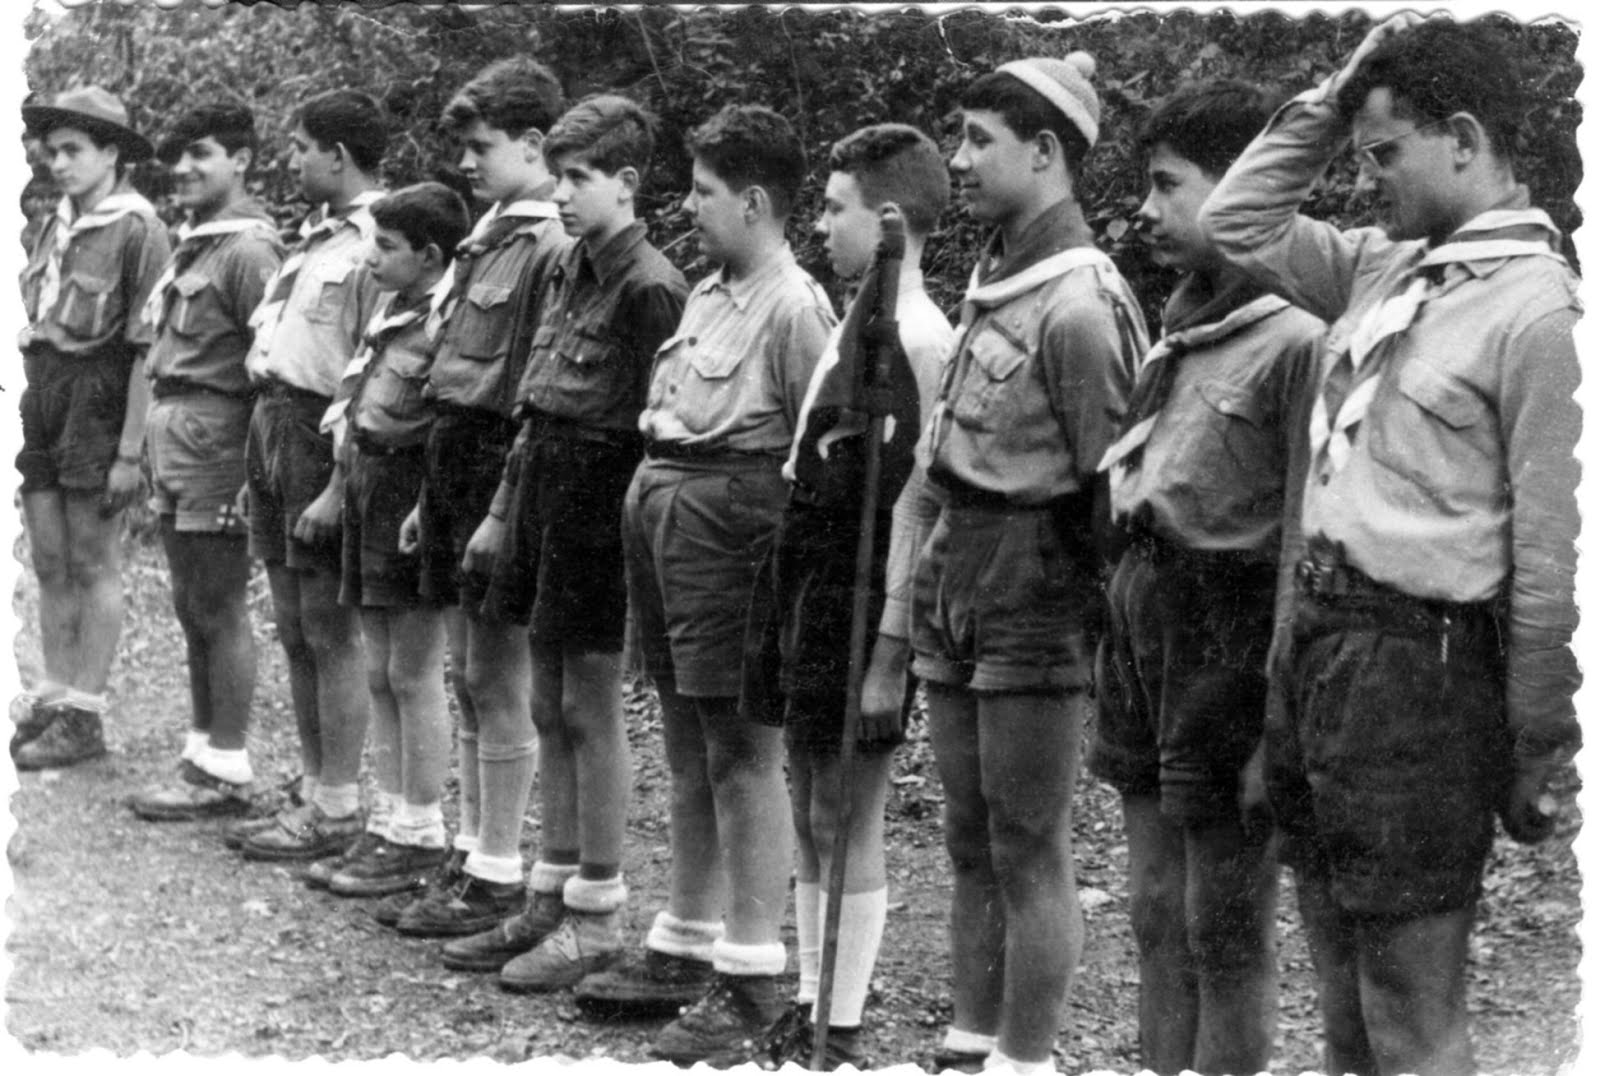 Boys Scouts de Catalunya any 1950-60